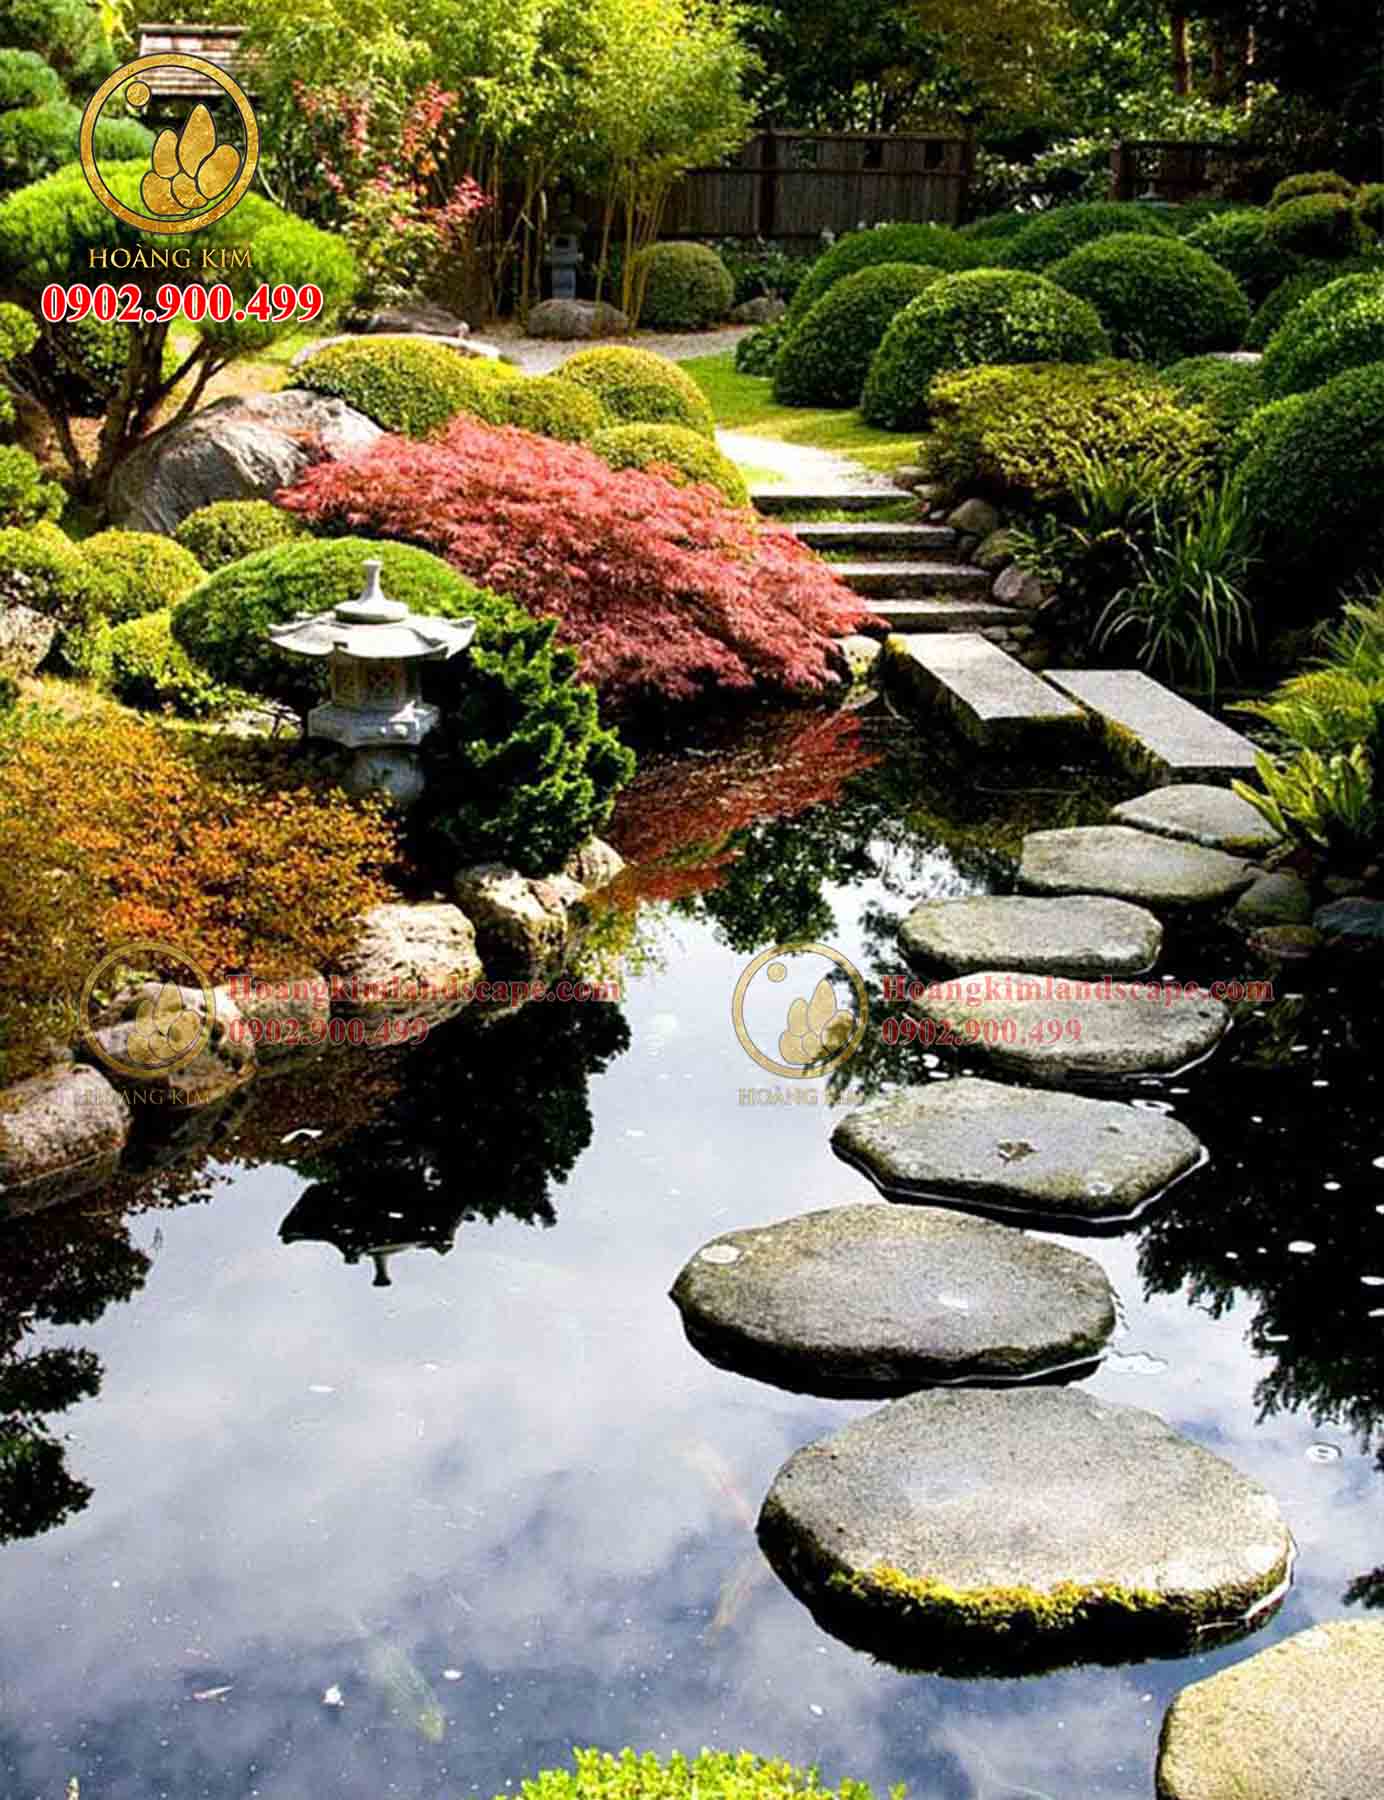 Lối đi bằng đá bước đi tự nhiên rất phù hợp với những sân vườn mang phong cách tự nhiên, phong cách Zen (thiền)